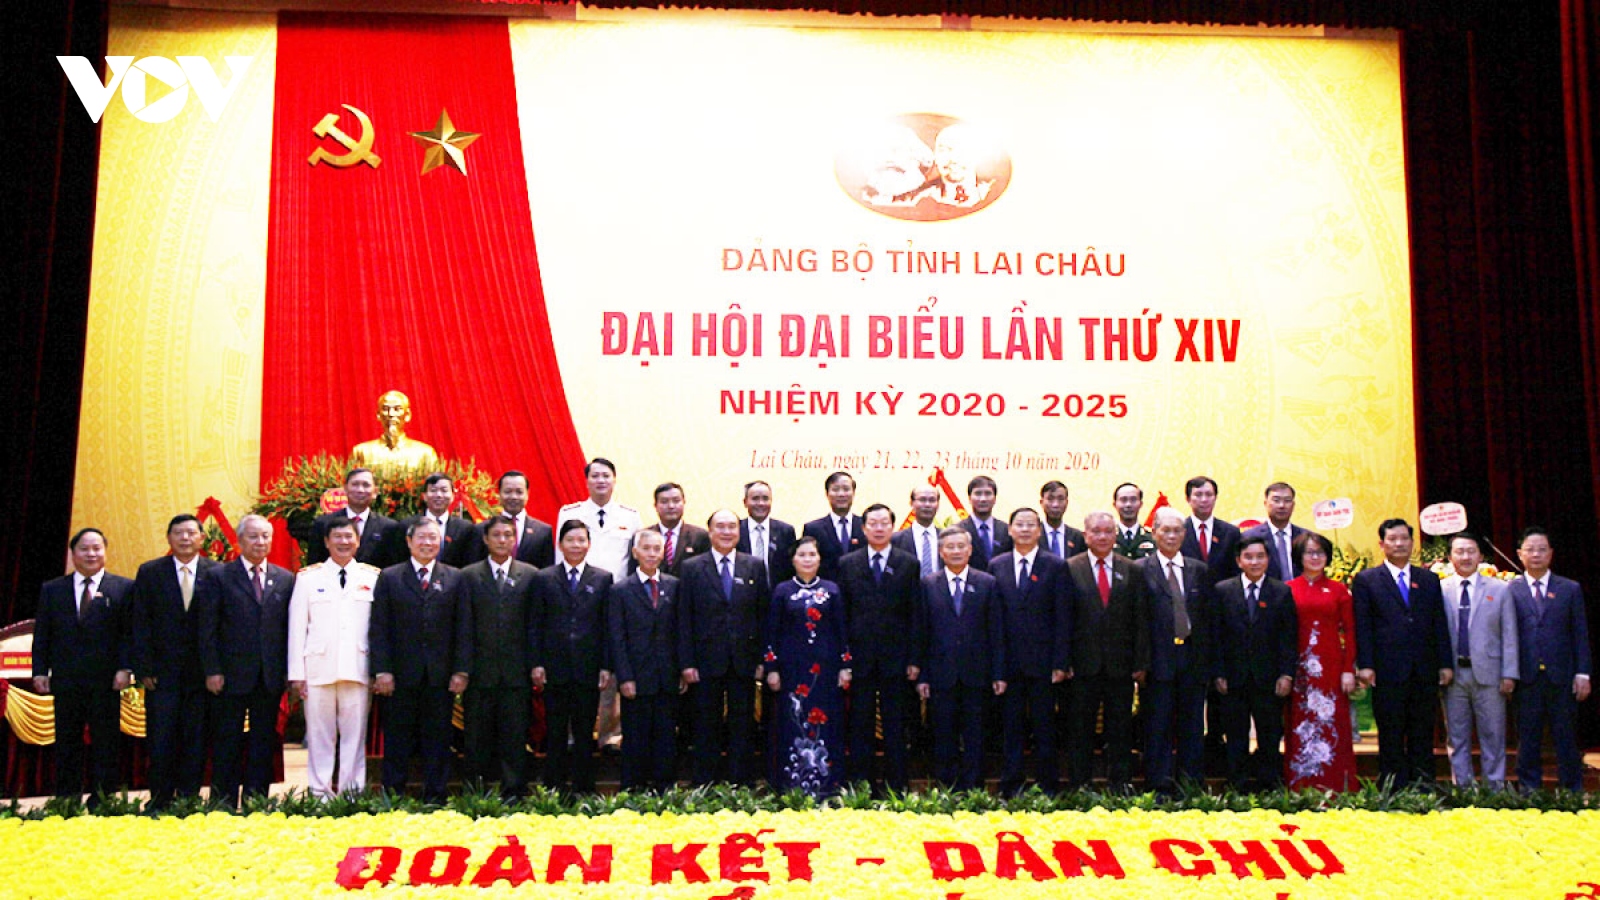 Bế mạc Đại hội Đảng bộ tỉnh Lai Châu khóa XIV